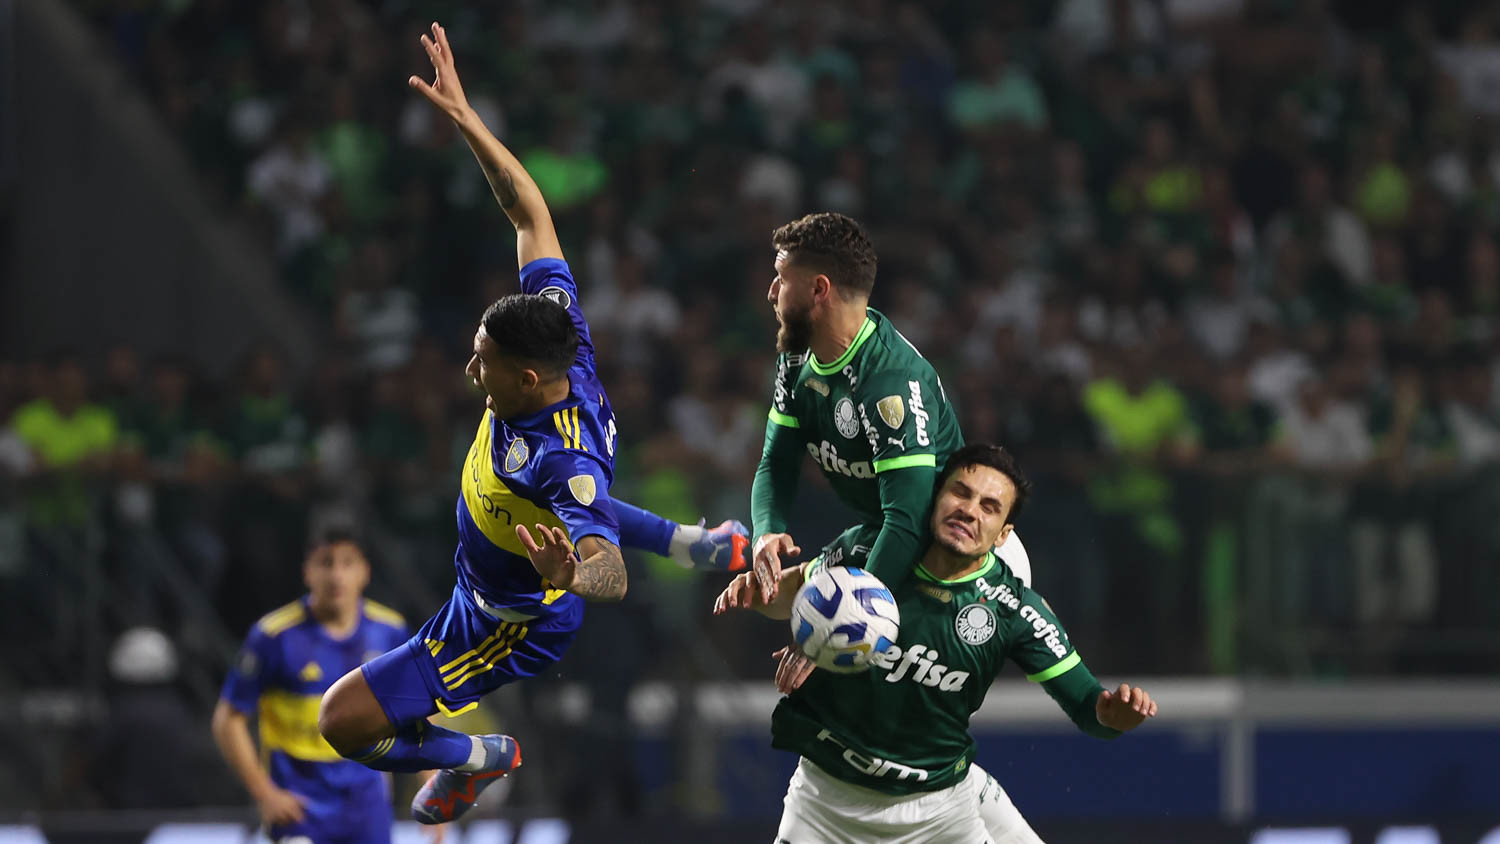 Palmeiras para em Romero, cai nos pênaltis para o Boca Juniors e se despede  da Libertadores - Bem Paraná